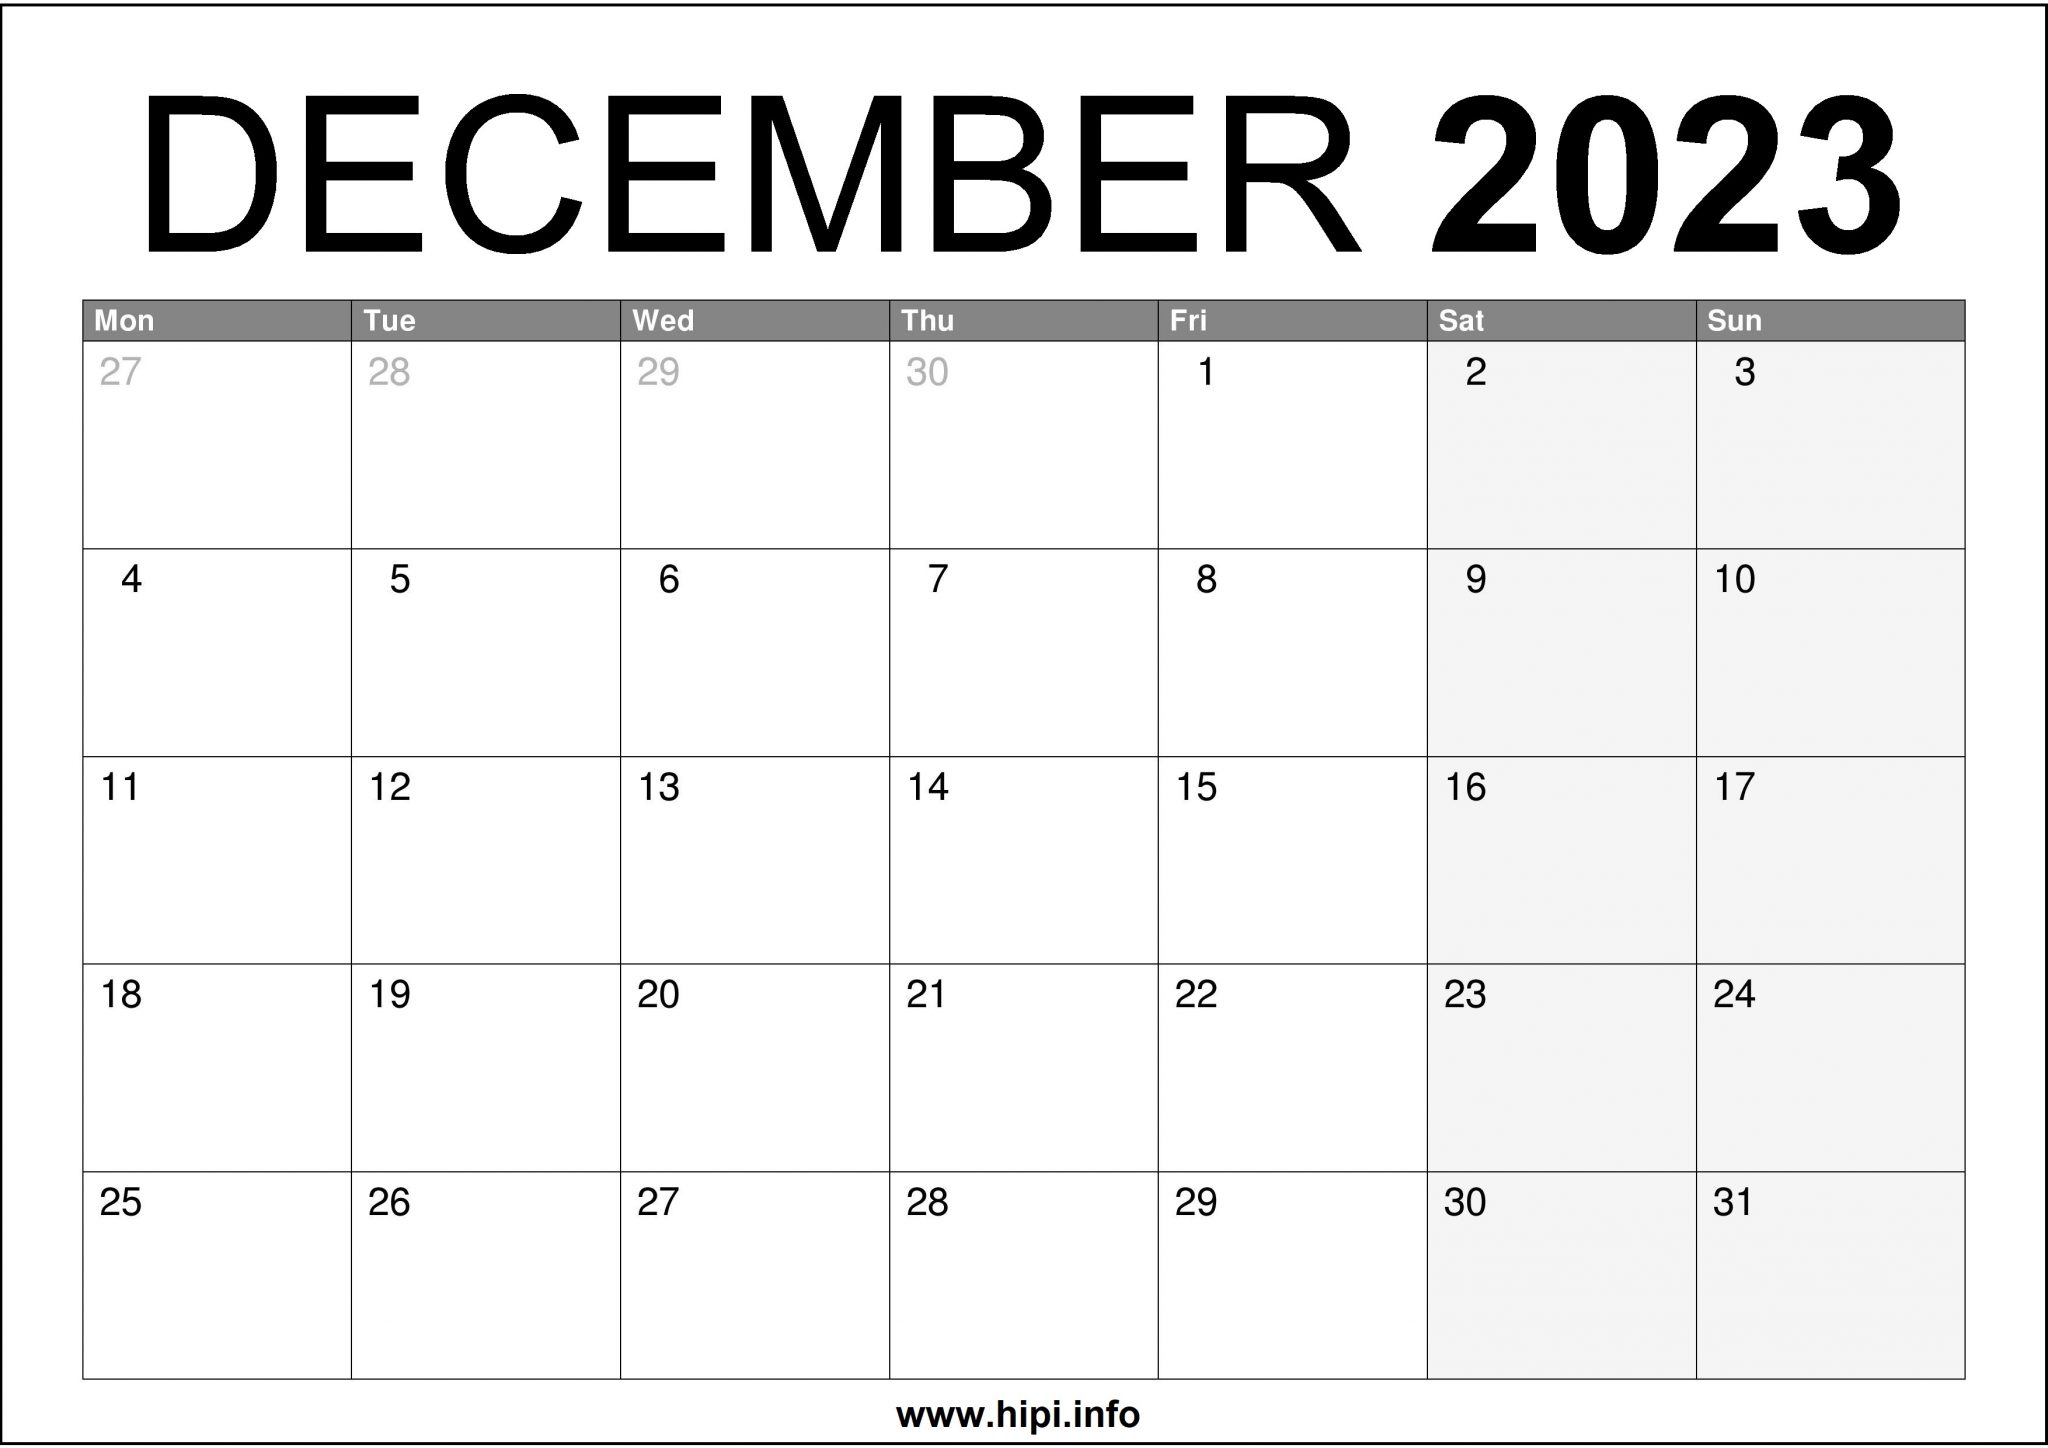 December 2023 UK Calendar A4 Size Free Hipi info